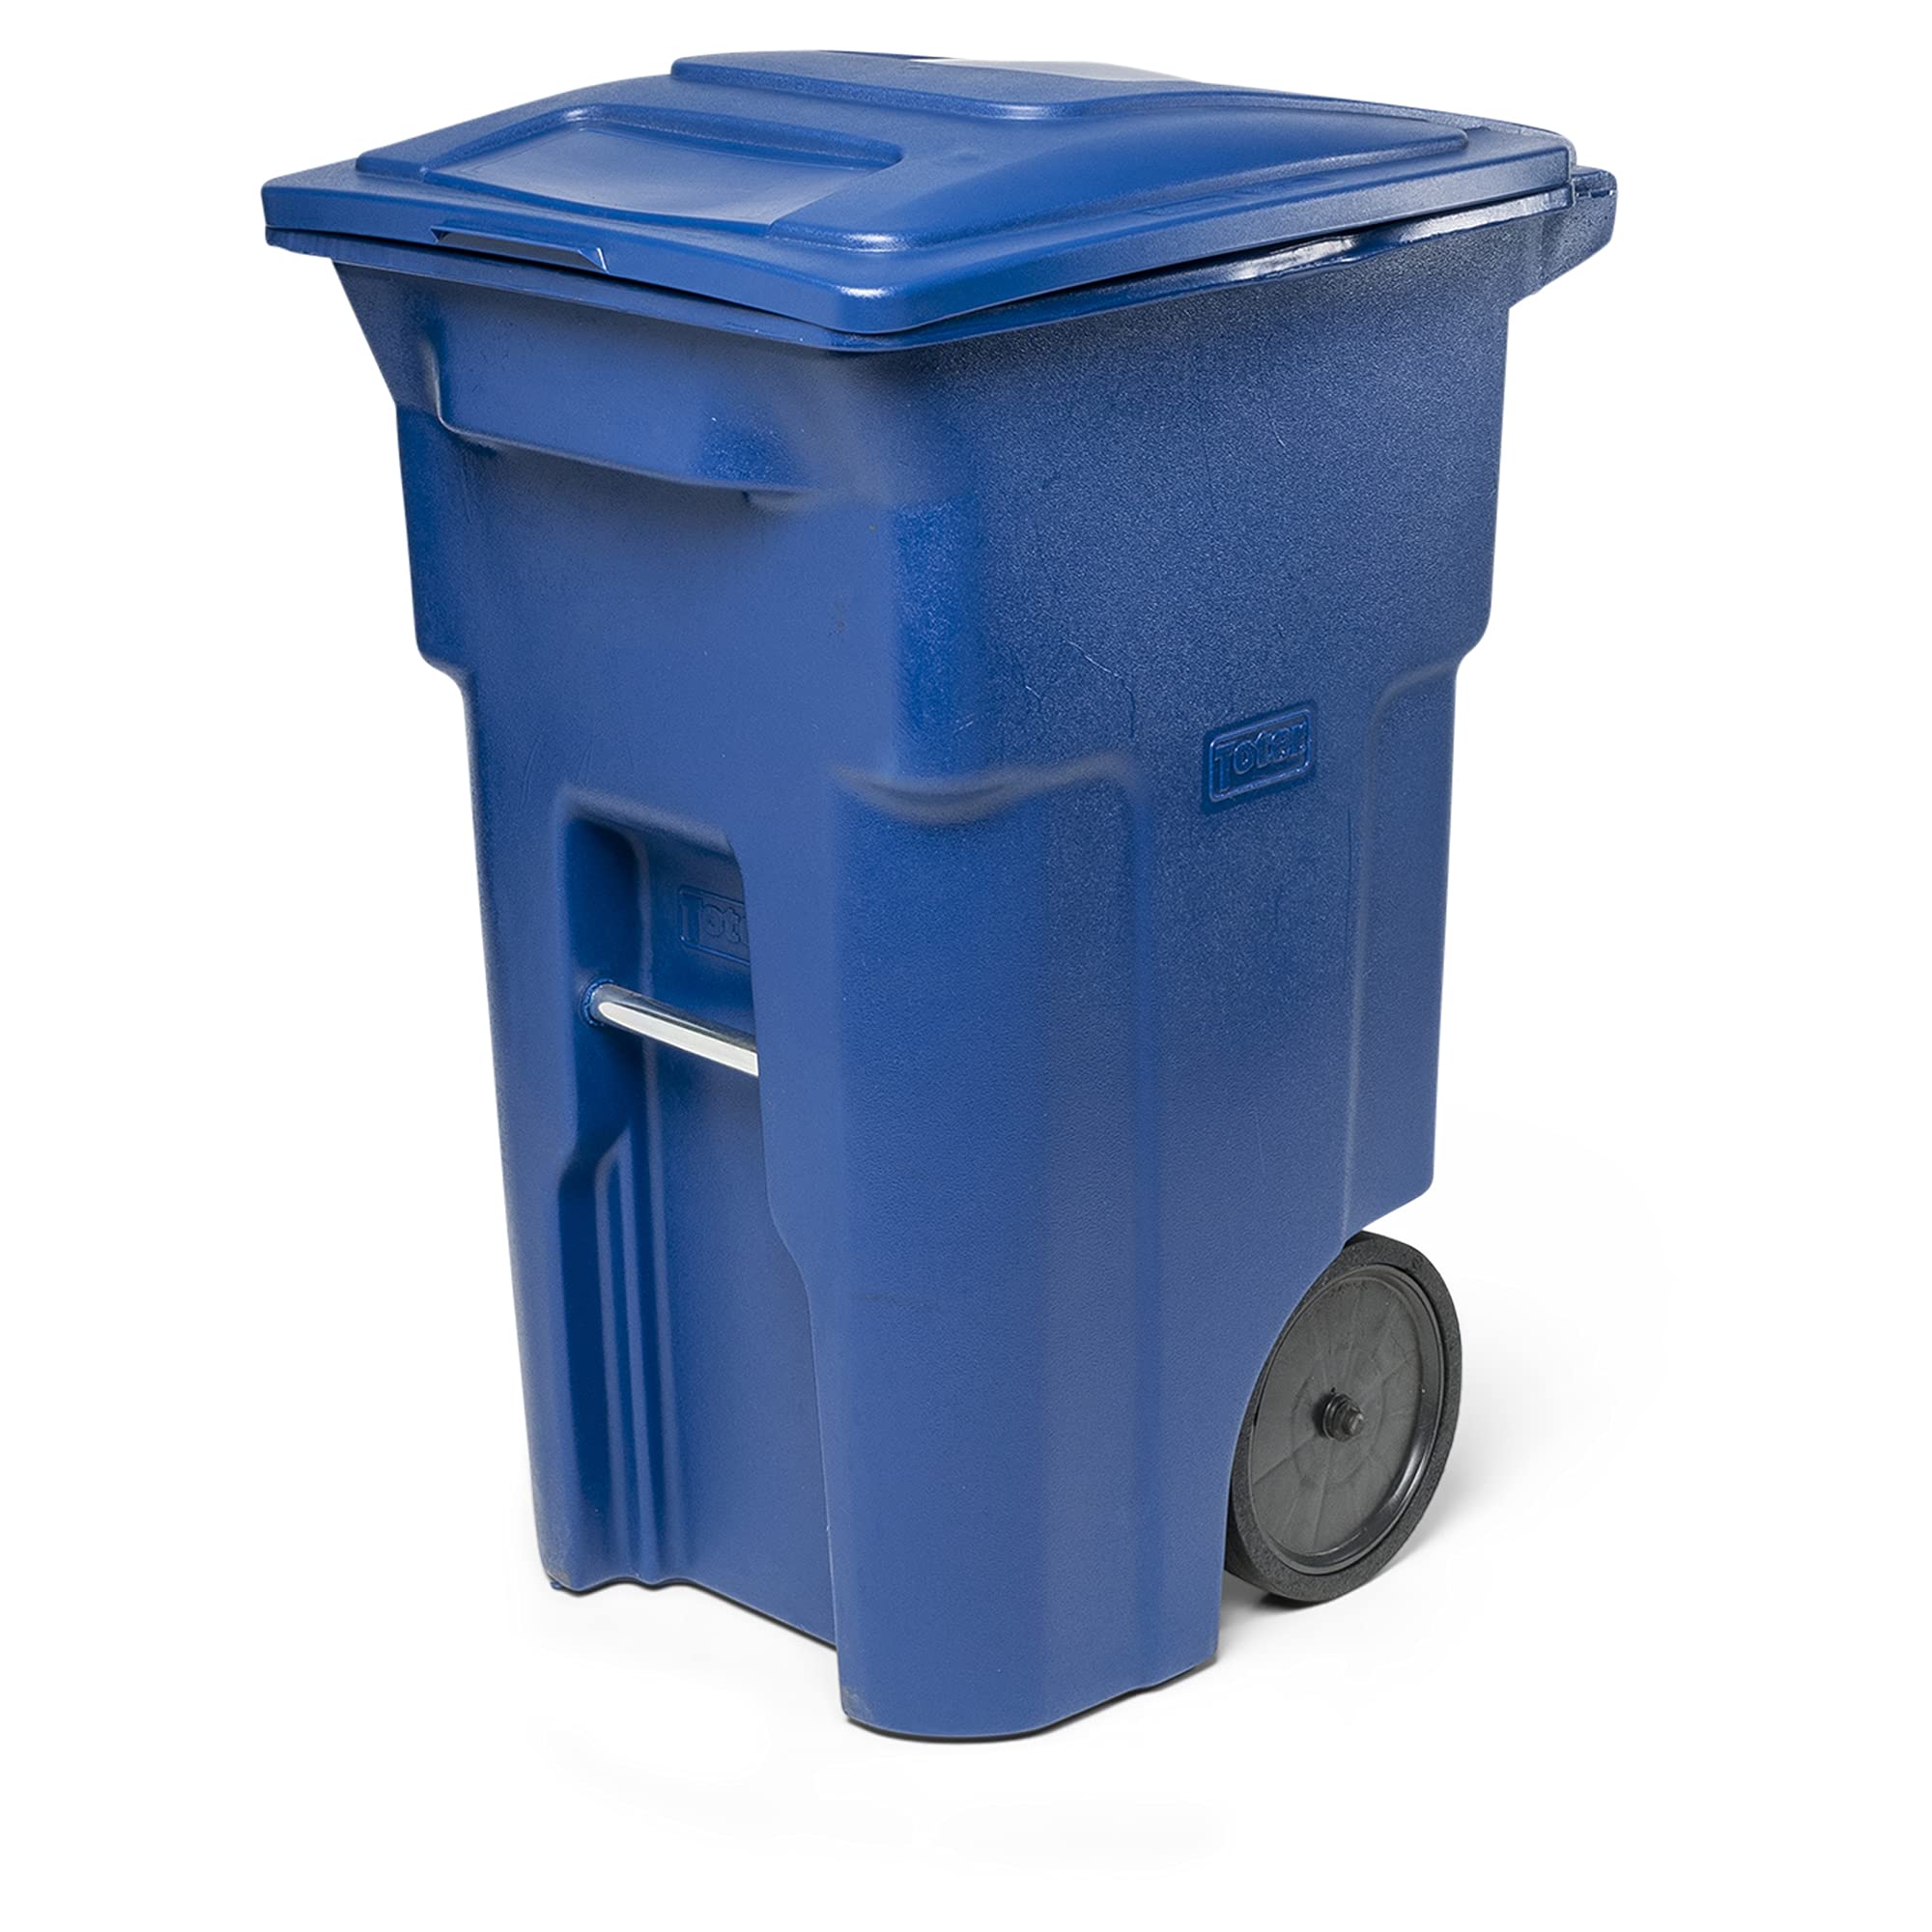 Toter 64 Gal. Lata de lixo azul com rodas silenciosas e tampa